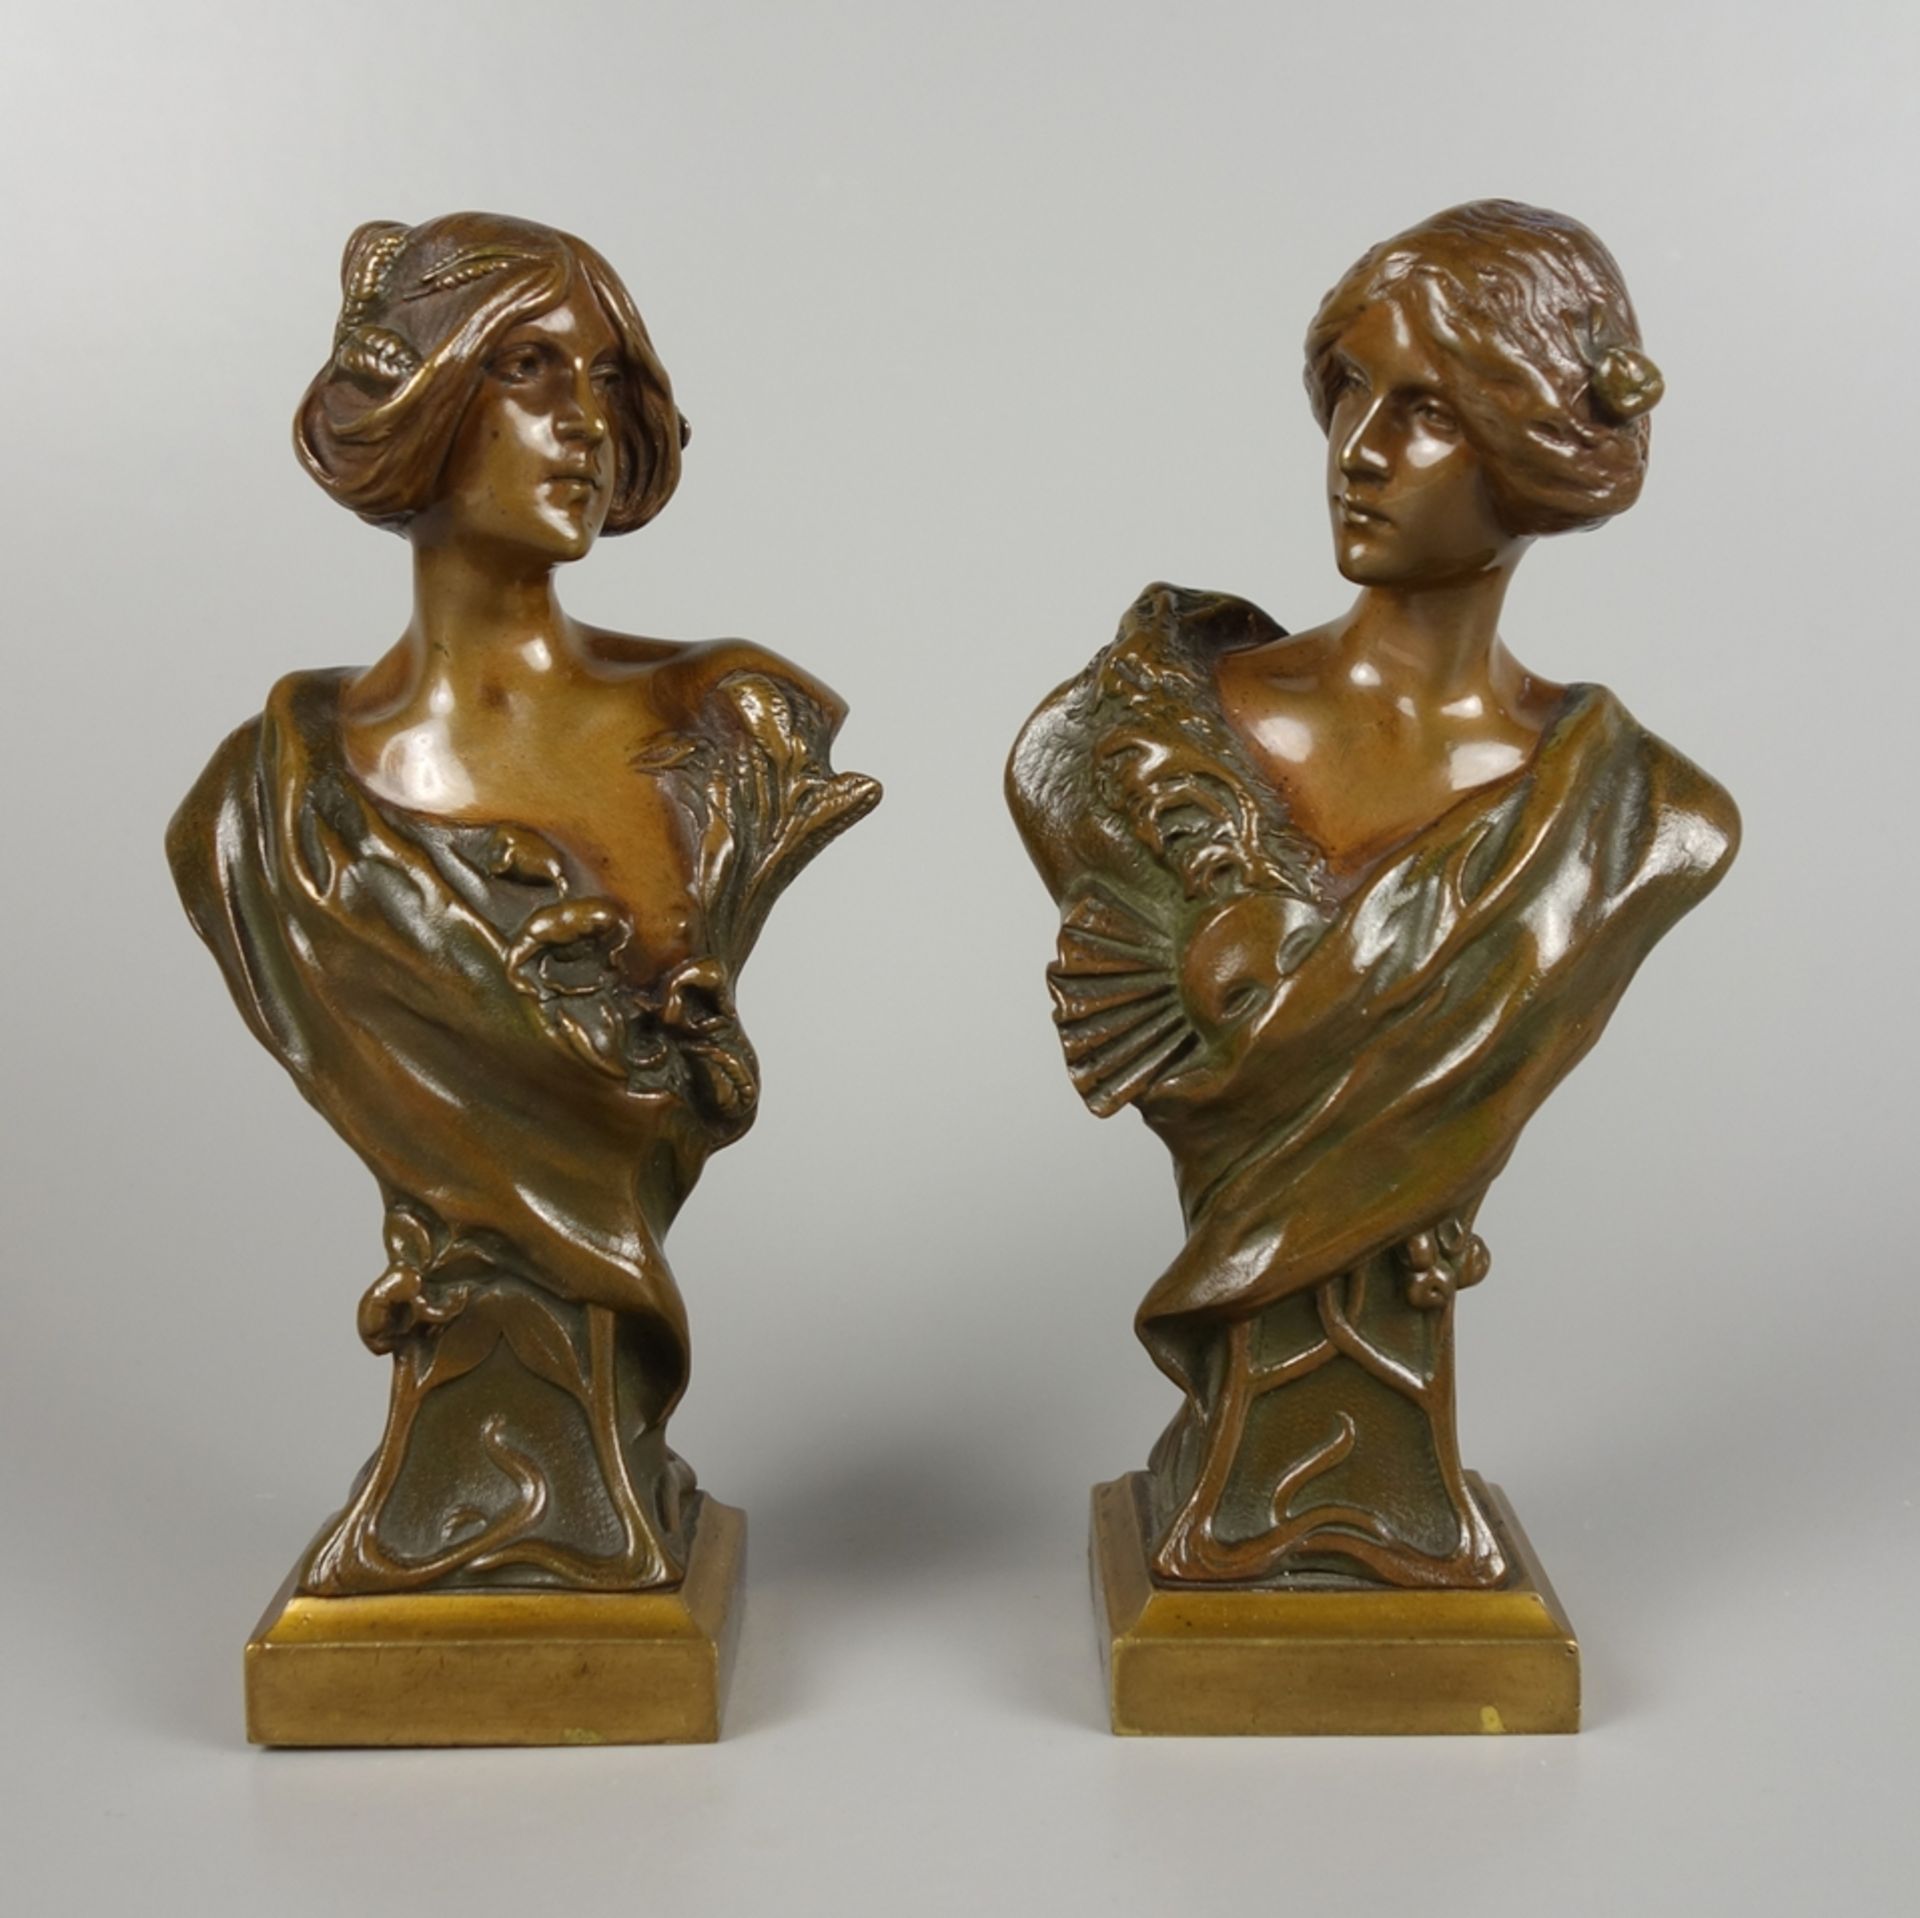 Hans Müller (Vienna 1873-1937), Pair of female busts, bronze, Art Nouveau c. 1910